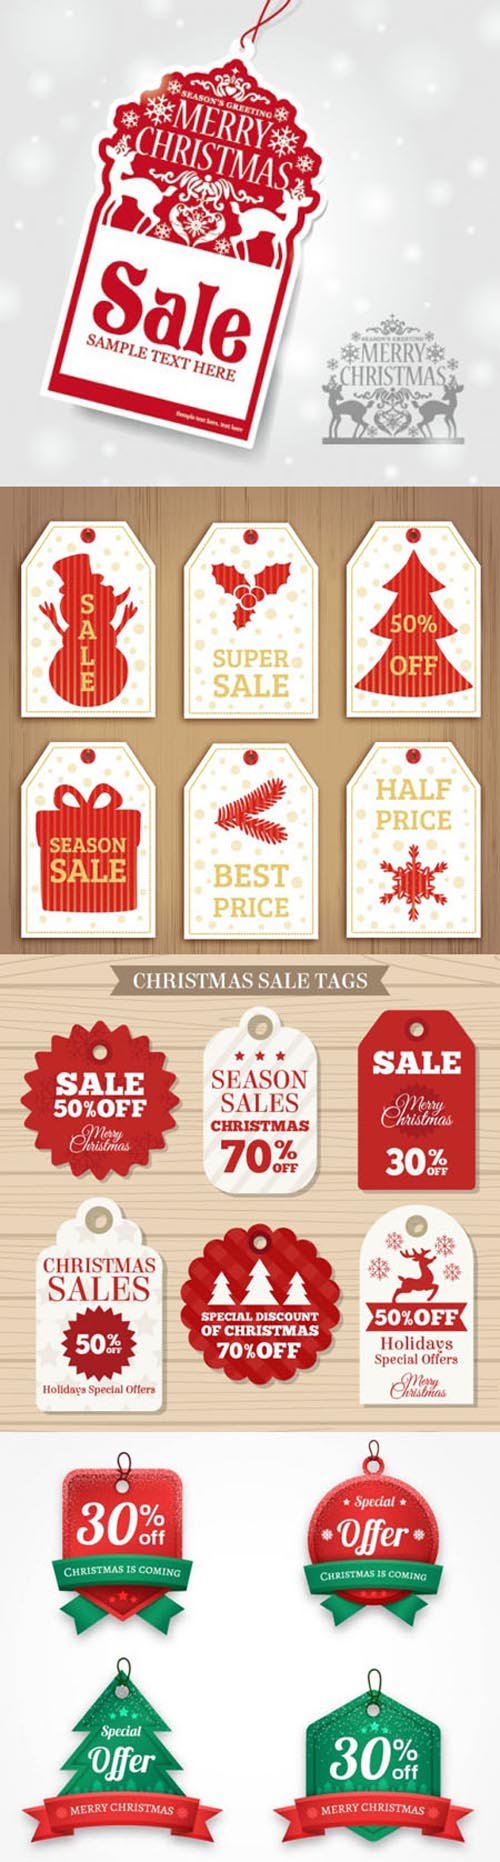 Holiday Sales Vector [Vol.2]